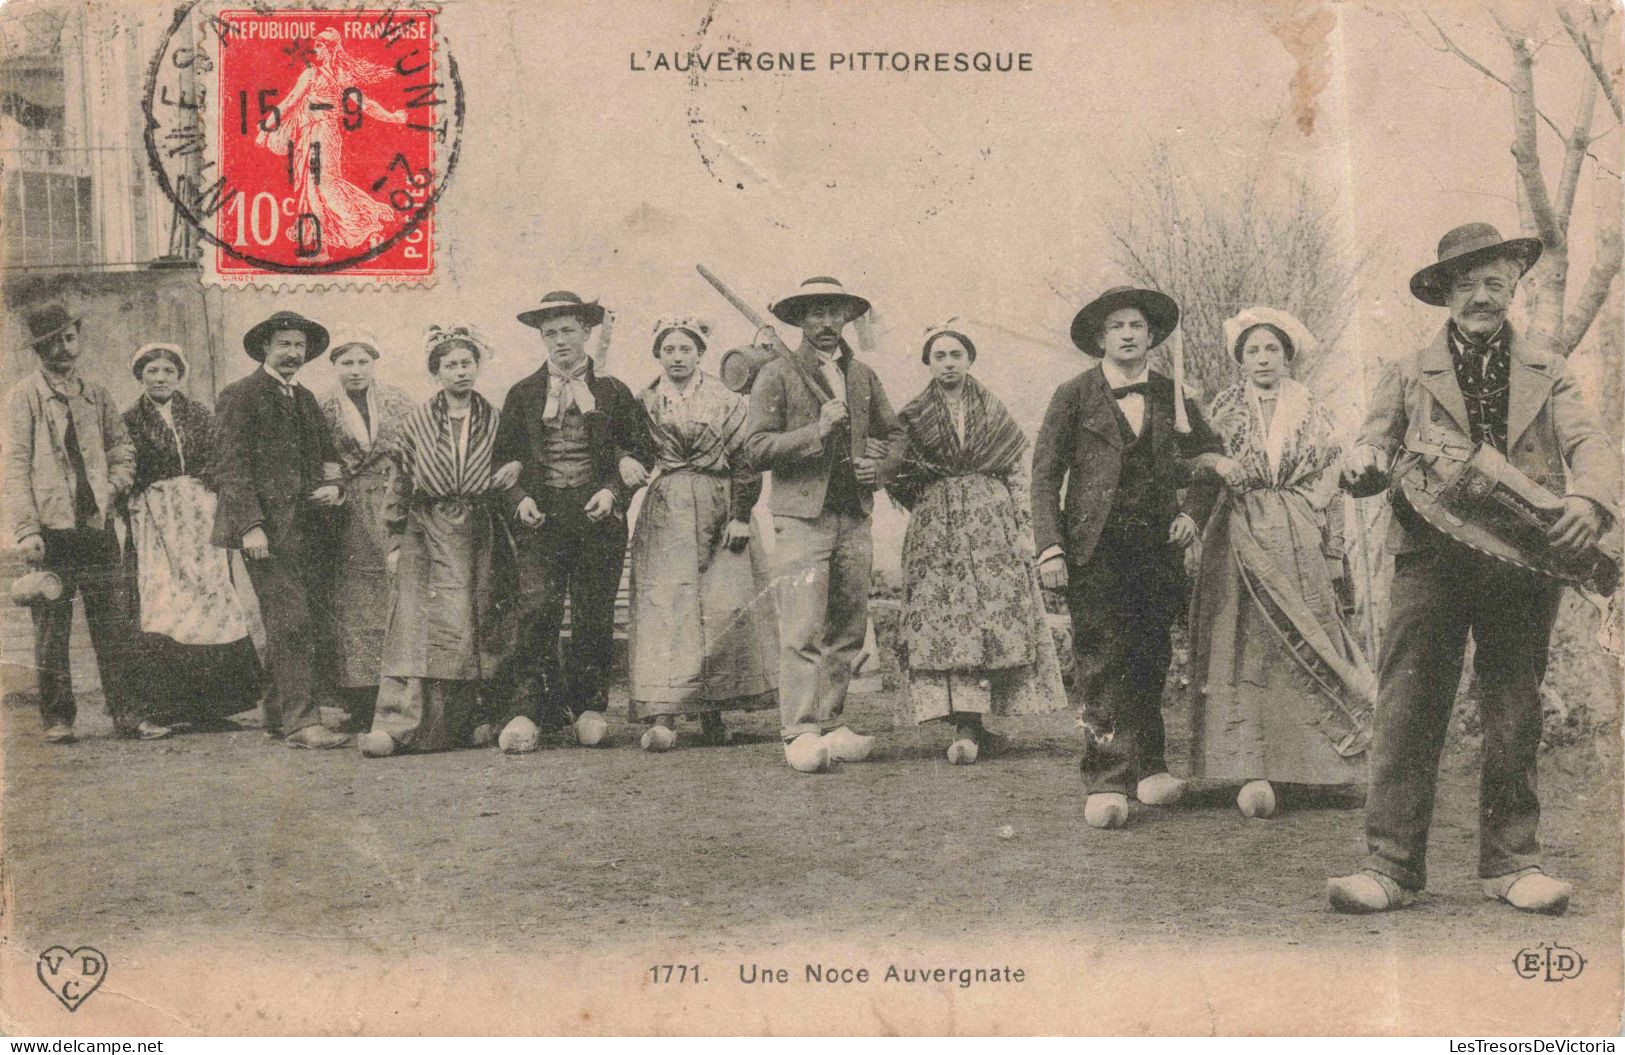 PHOTOGRAPHIE - Une Noce Auvergnate - L'Auvergne Pittoresque - Carte Postale Ancienne - Photographs